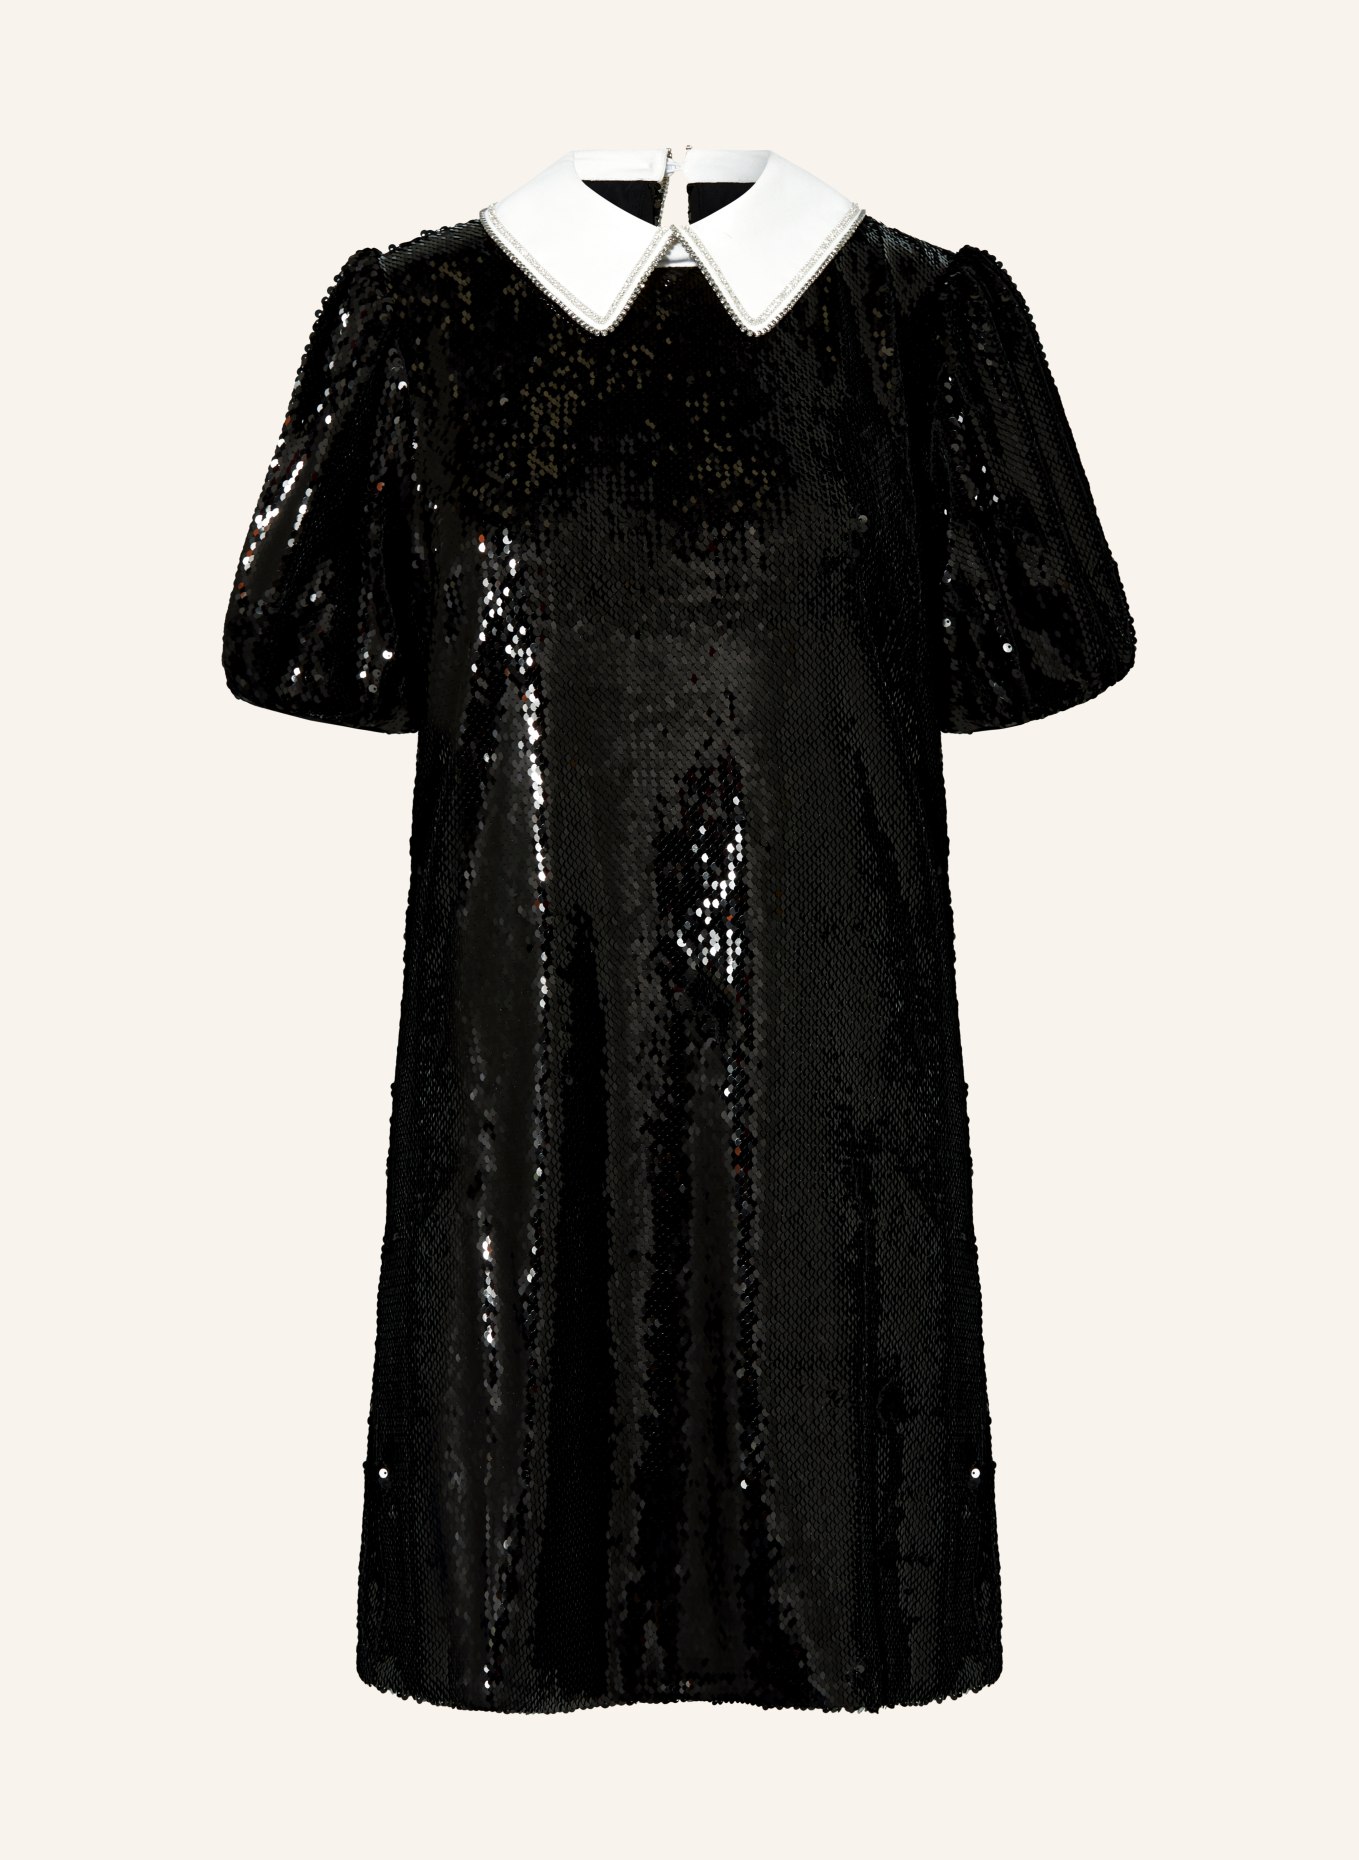 TED BAKER Kleid ZARELL mit Pailletten und Schmucksteinen, Farbe: SCHWARZ (Bild 1)